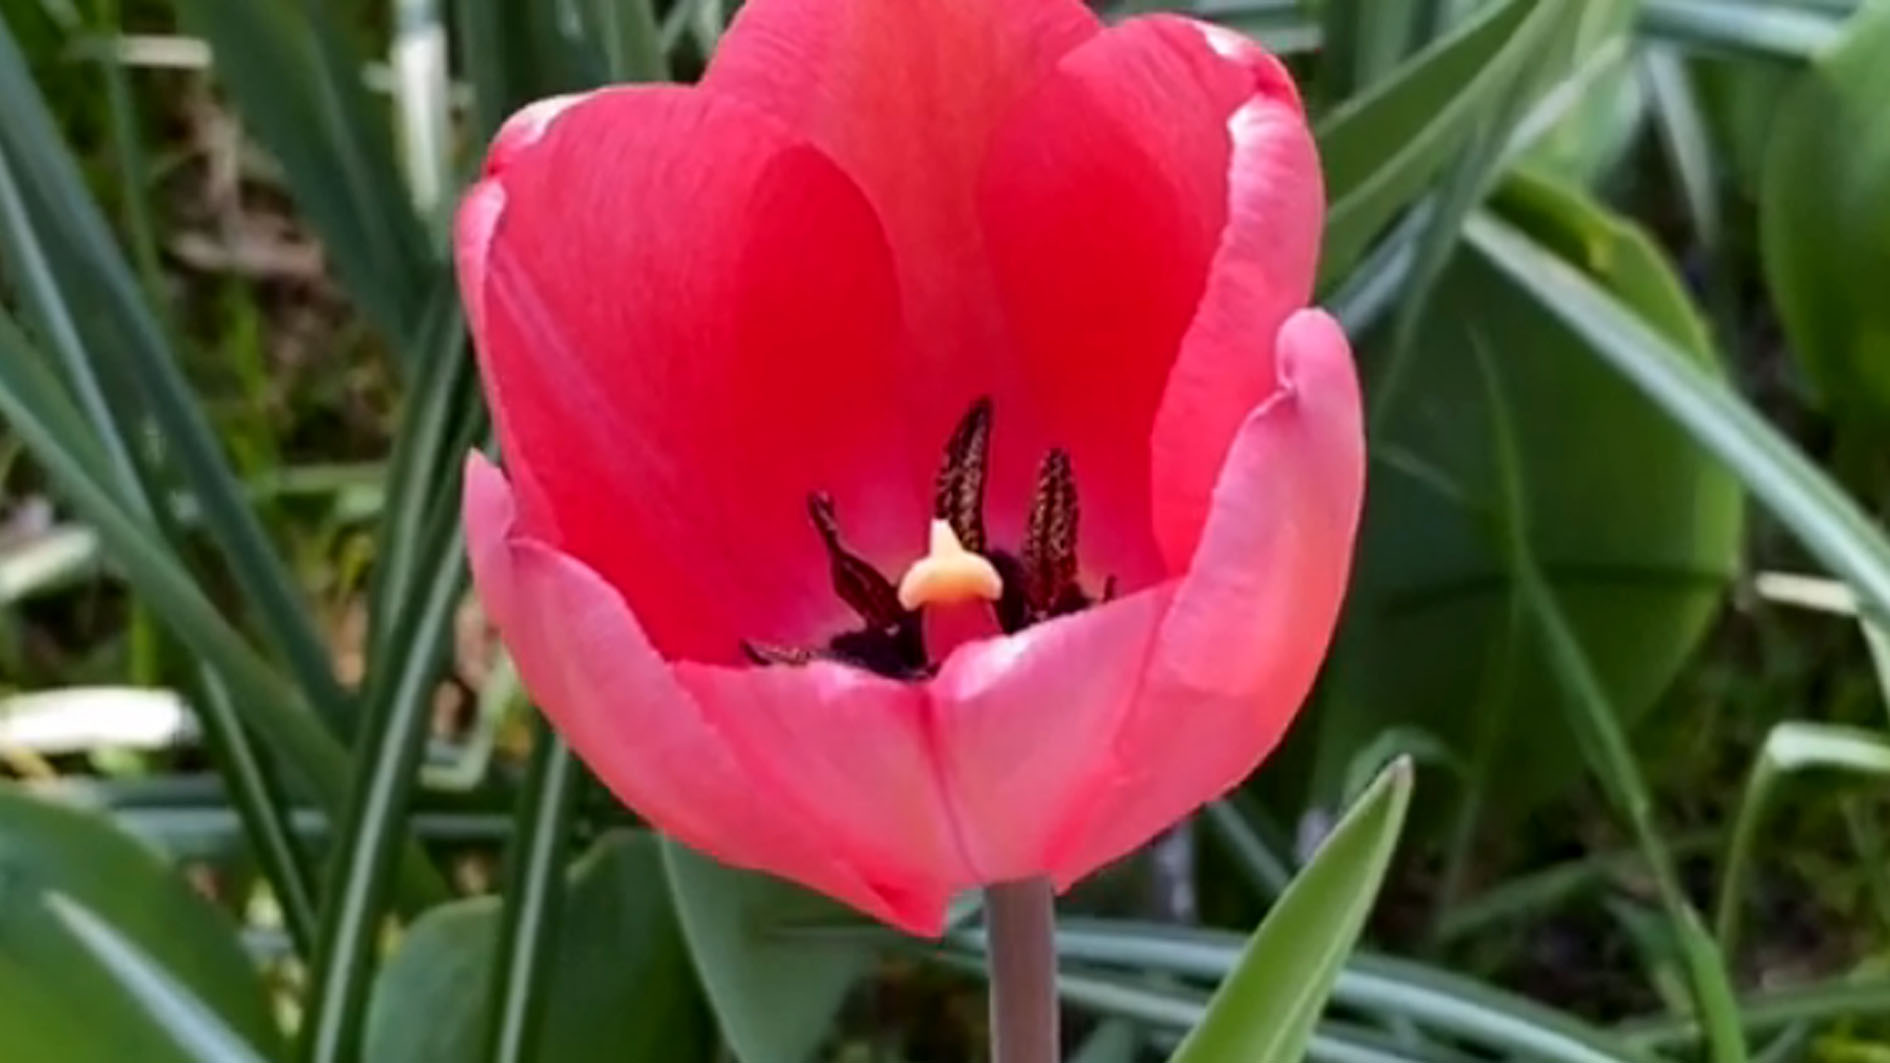 Tanaman Hias Bunga Tulip Melambangkan Kasih Sayang dan Cinta, ini 7 Manfaatnya untuk Kesehatan